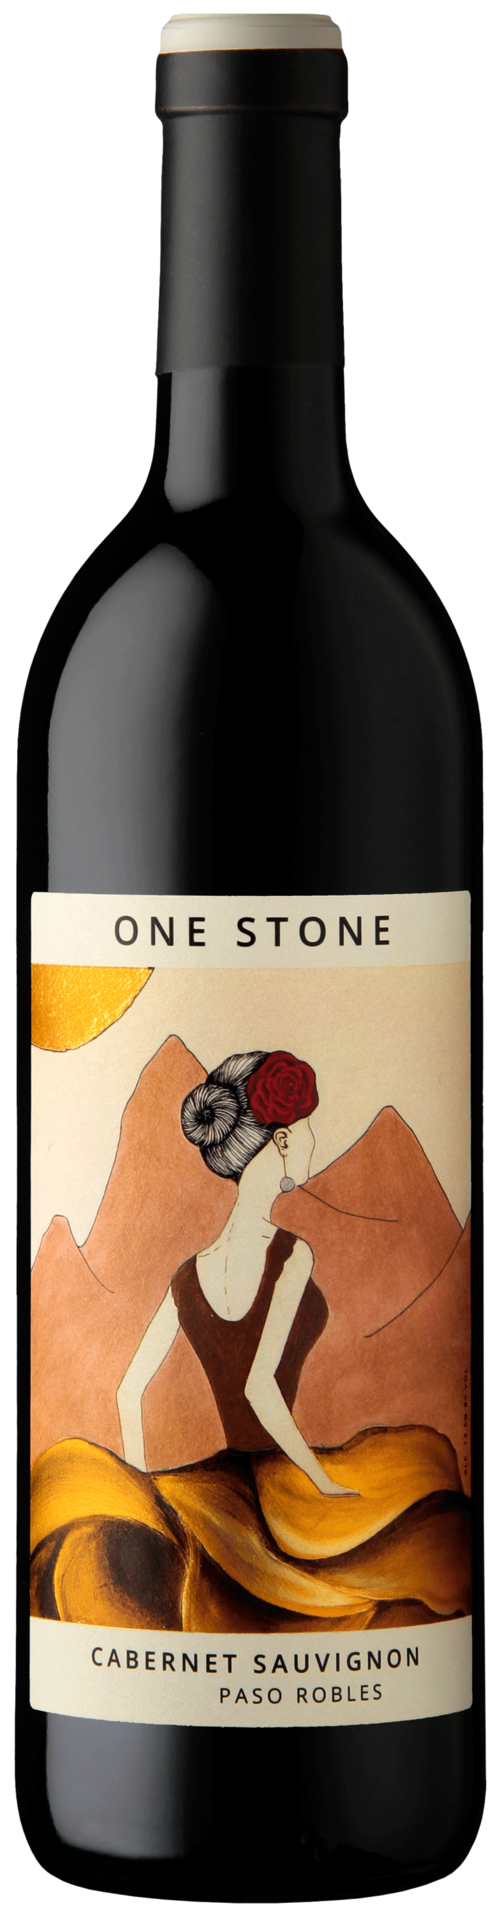 One Stone Cabernet Sauvignon Paso Robles 2021